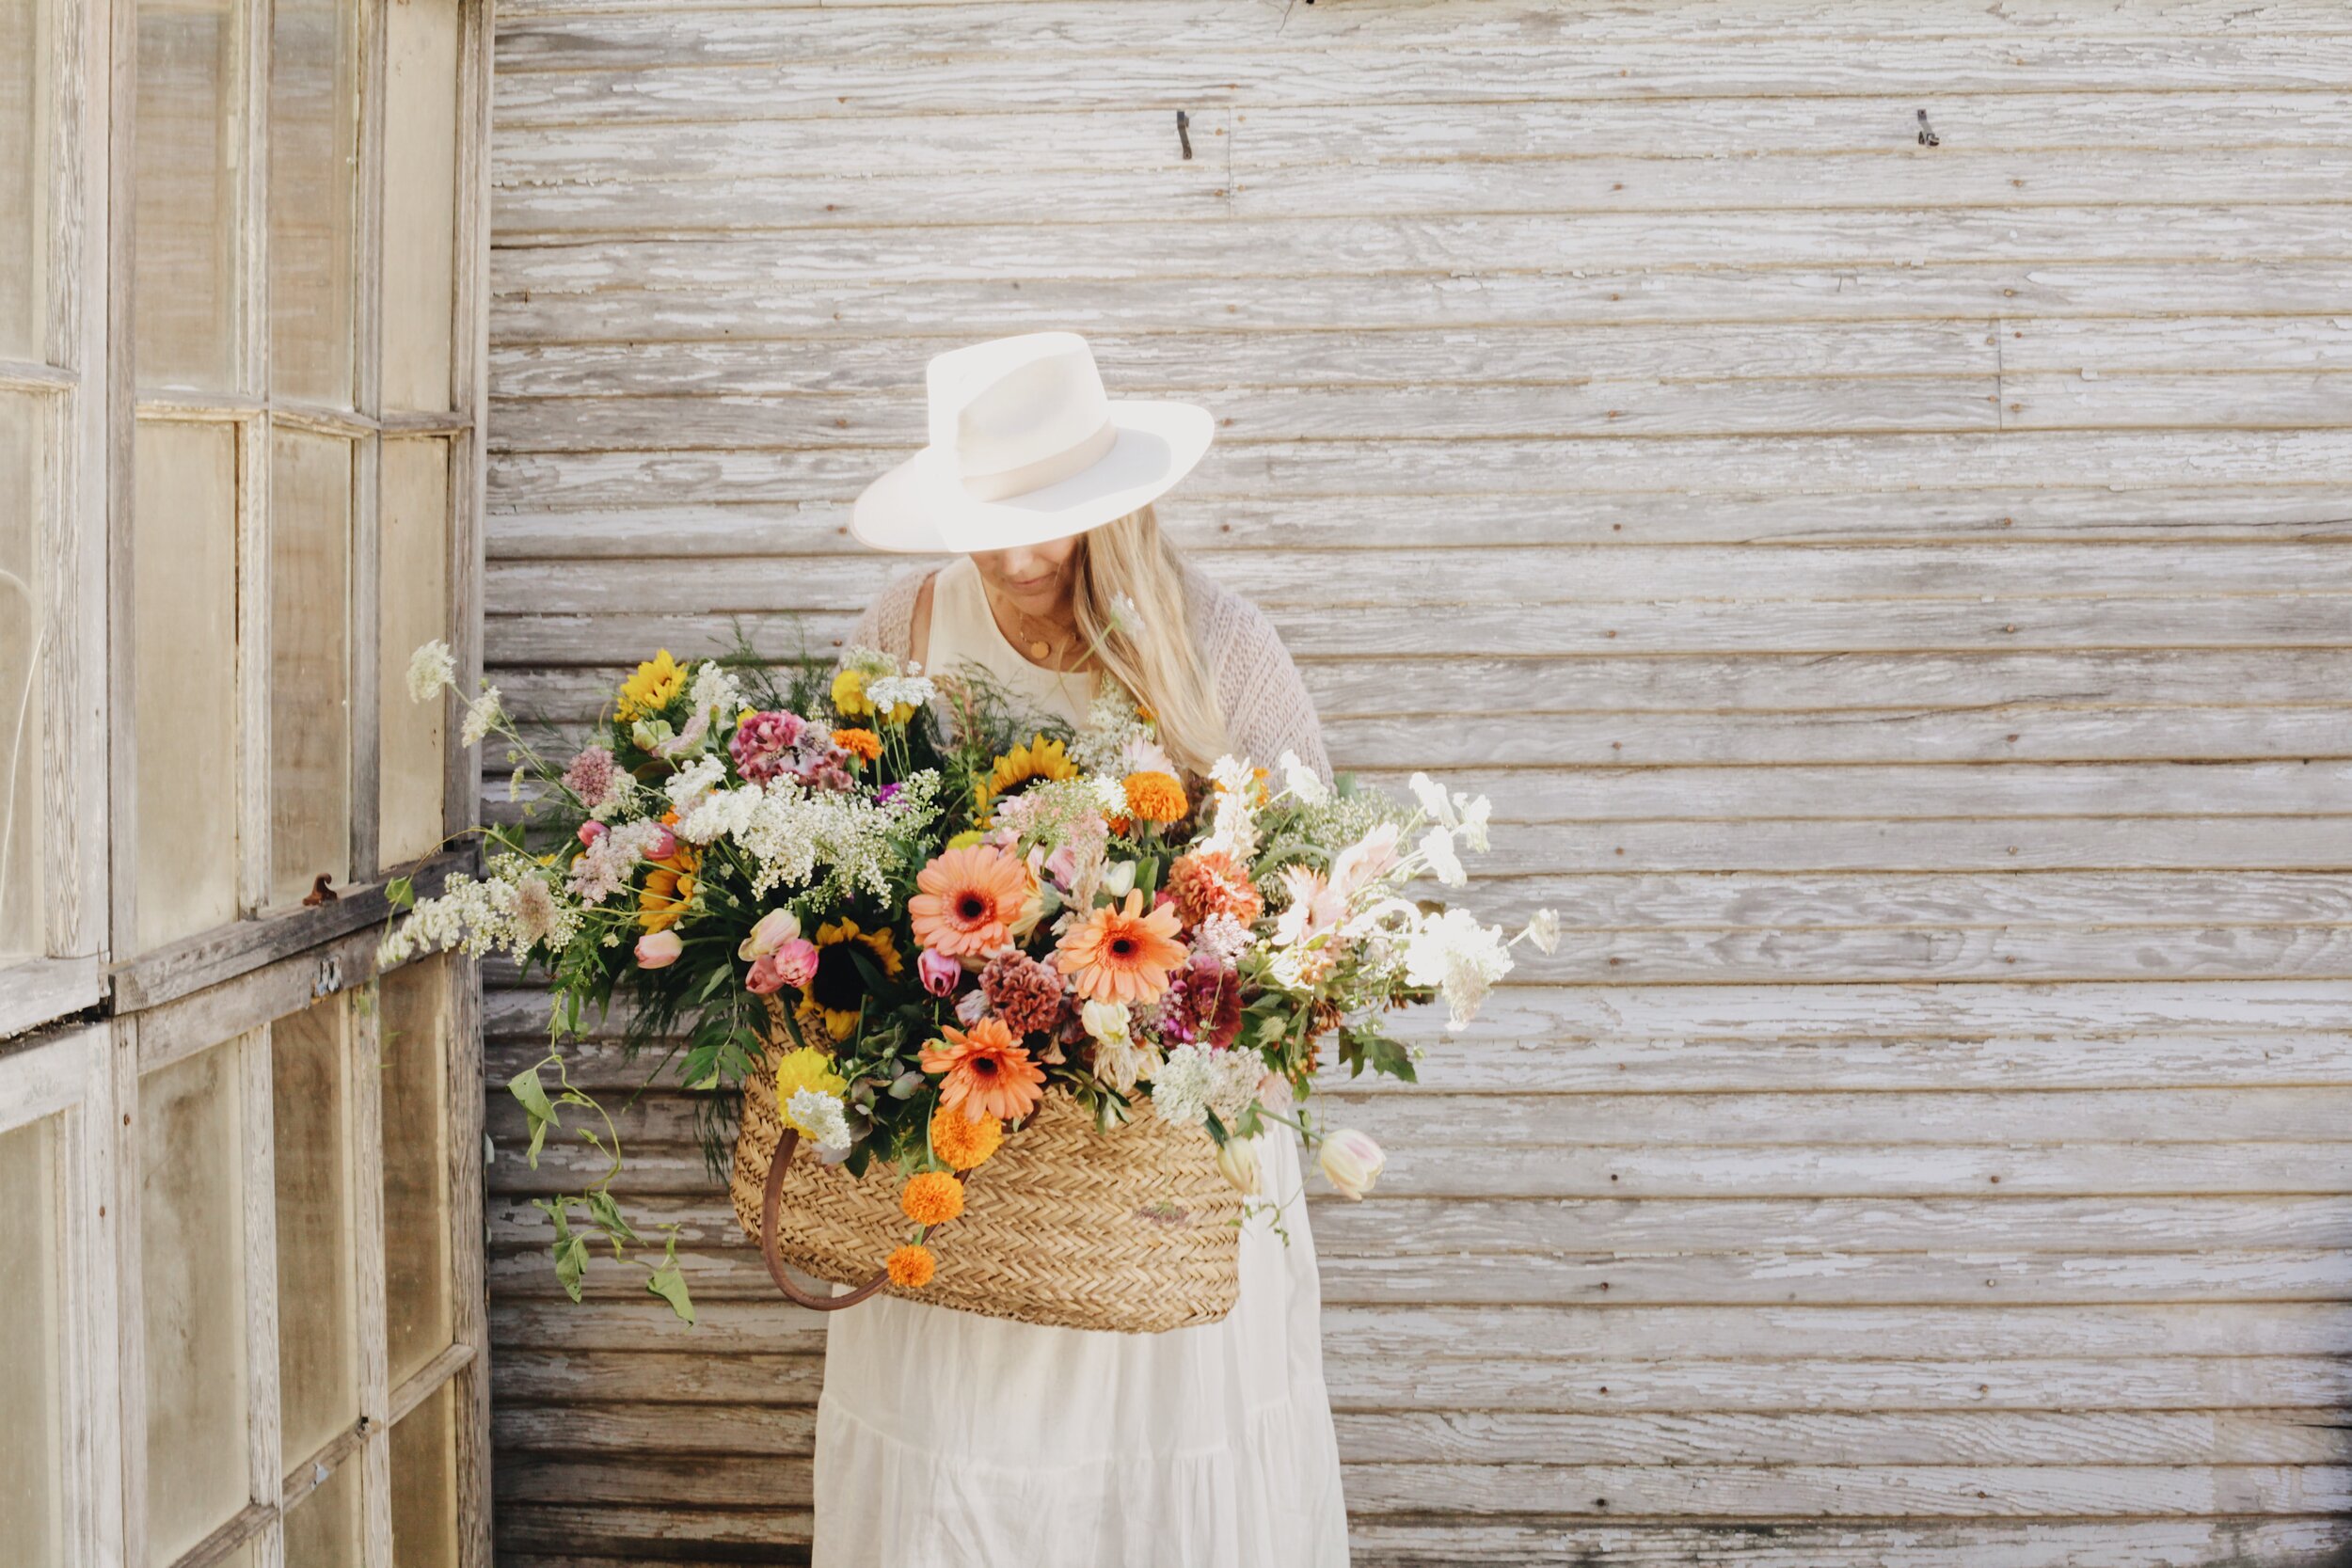 Create a Happy Summertime Basket Flower Arrangement (It's Foam Free!)